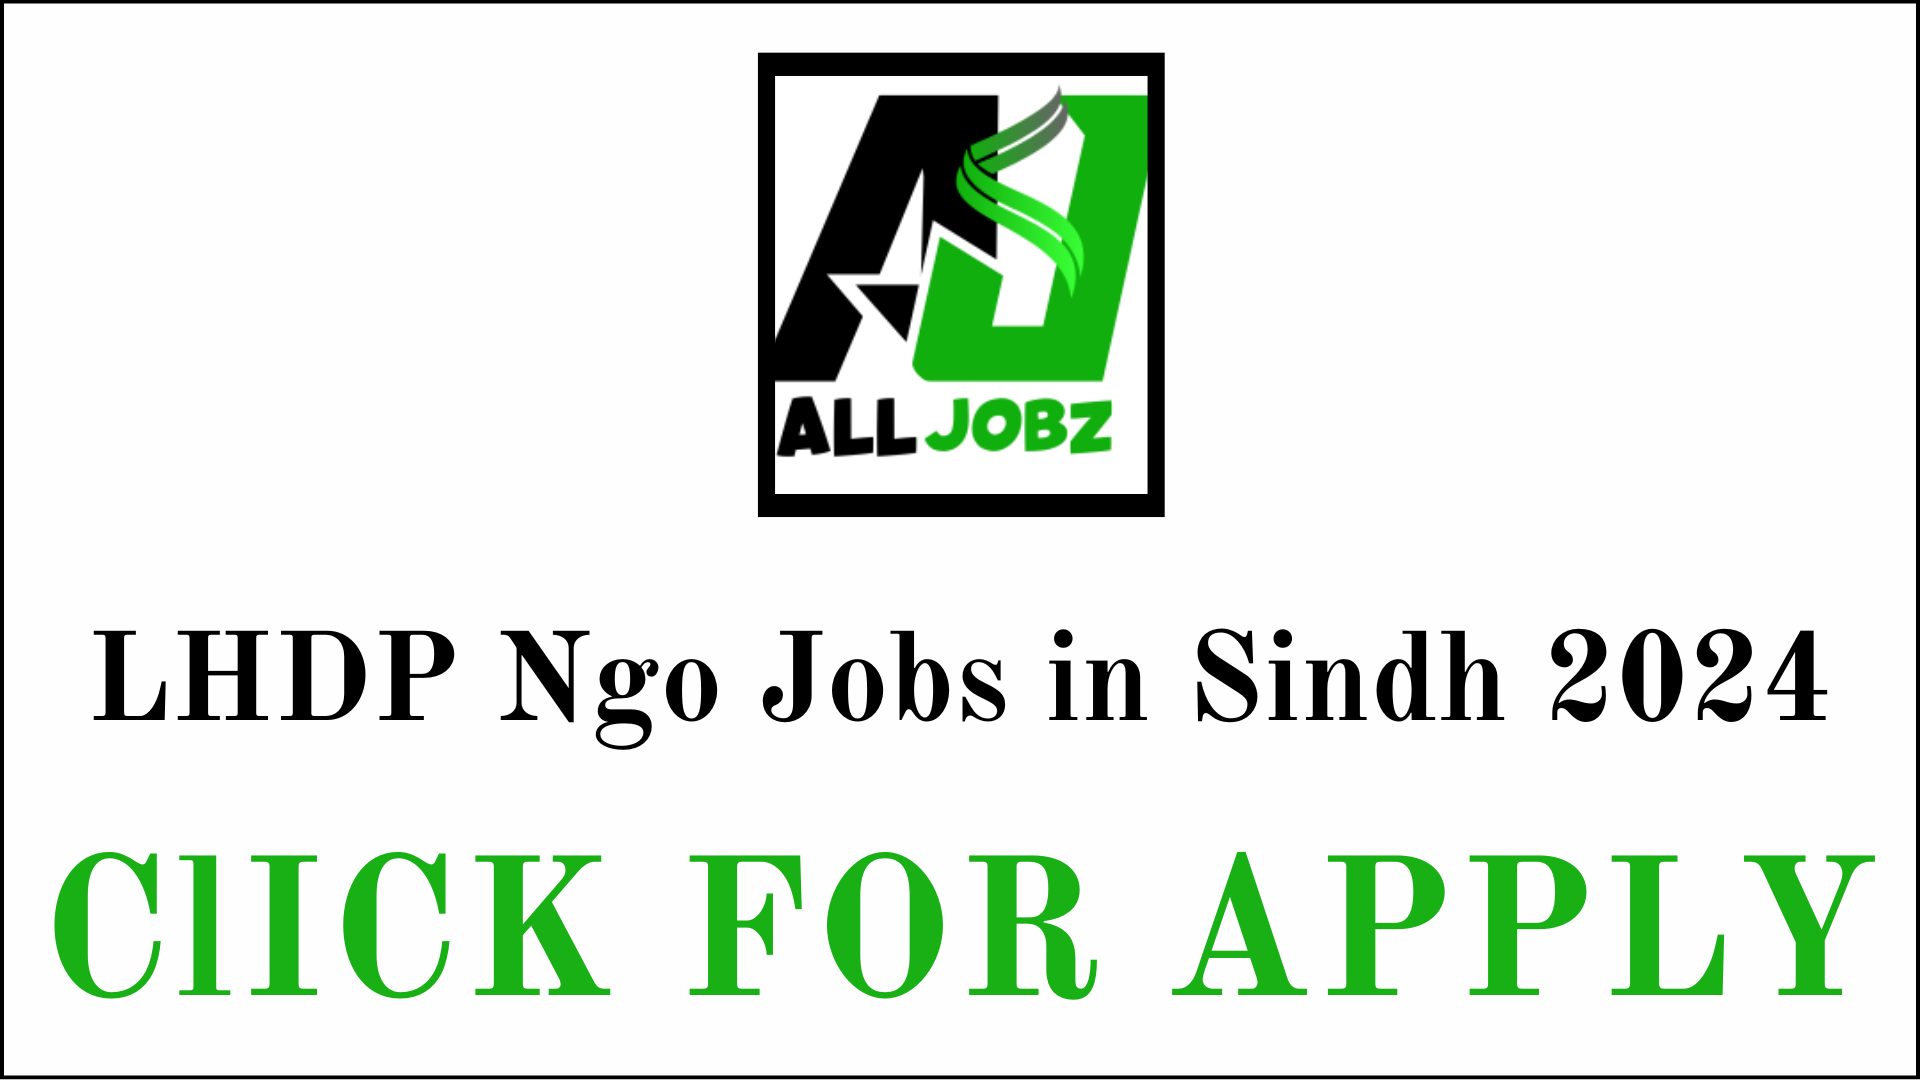 Lhdp Ngo Jobs In Sindh, Lhdp Ngo Jobs In Sindh 2024, Lhdp Ngo Jobs In Sindh Salary, Lhdp Ngo Jobs In Sindh Contact Number, Lhdp Ngo Jobs In Sindh For Female, Lhdp Ngo Jobs In Sindh 2024, Lhdp Ngo Jobs Salary, Lhdp Ngo Jobs In Pakistan,